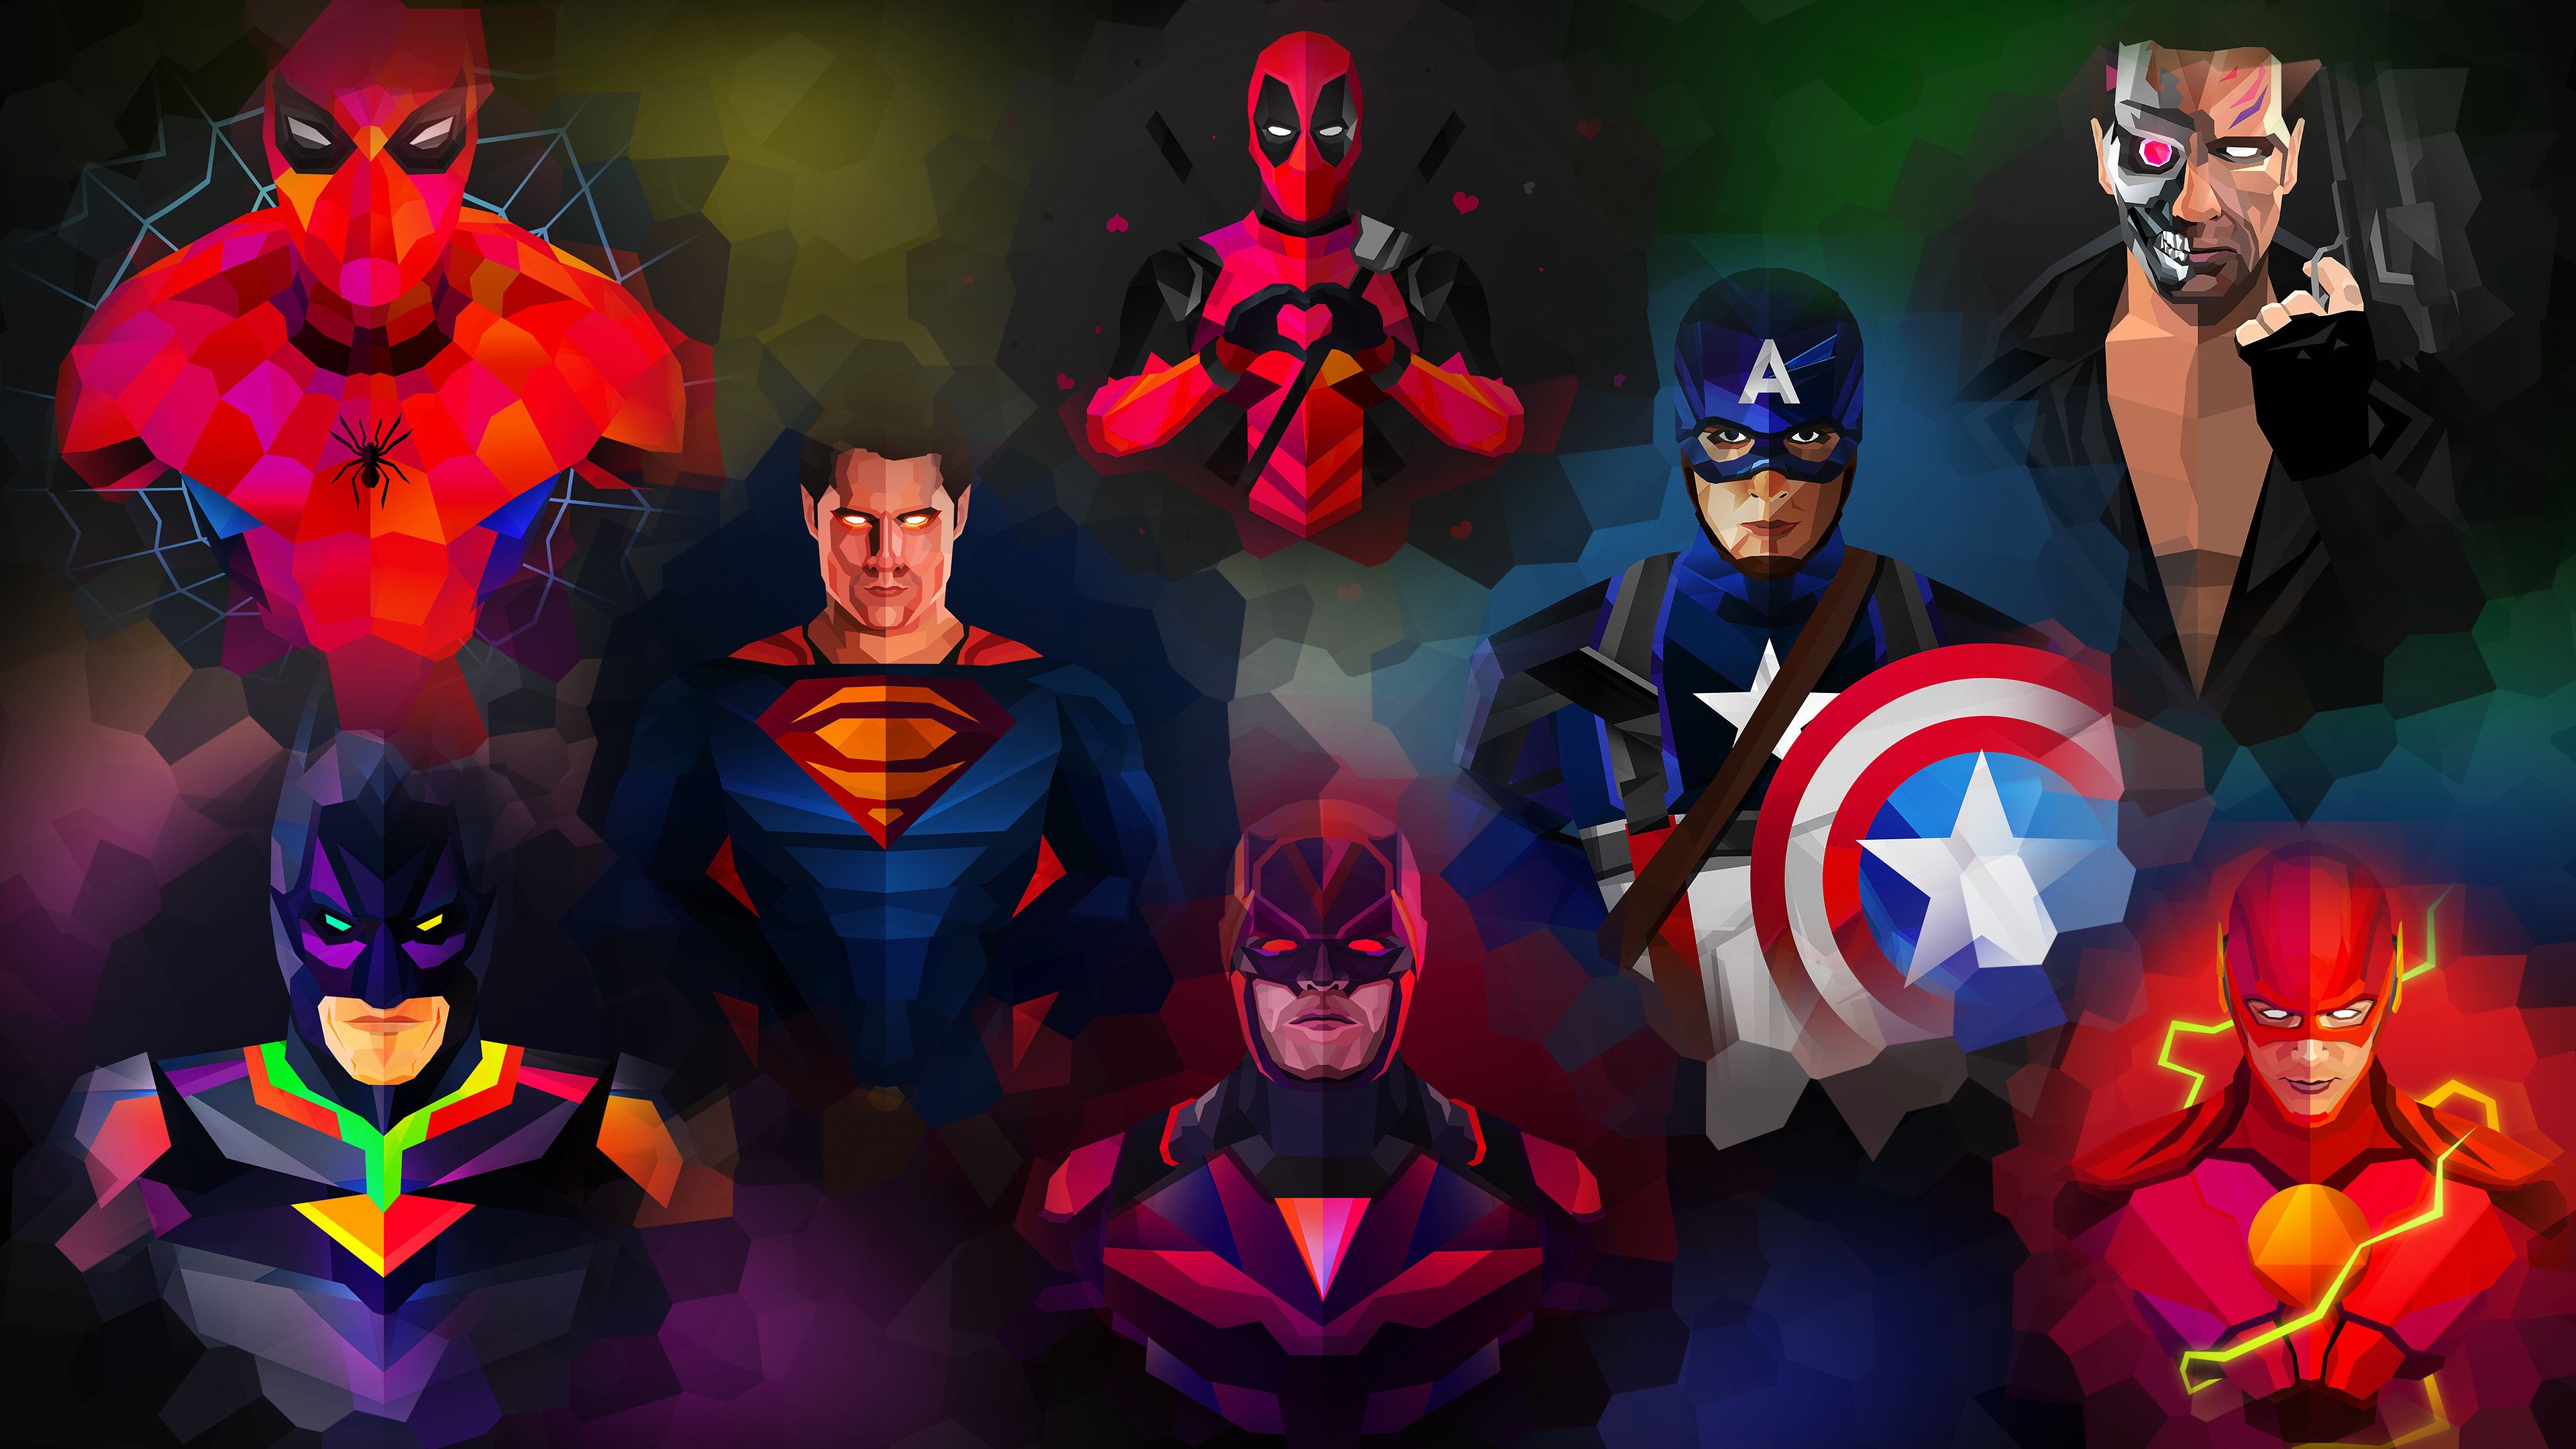 4K Superhero Wallpapers   Top 4K Superhero Backgrounds 3840x2160